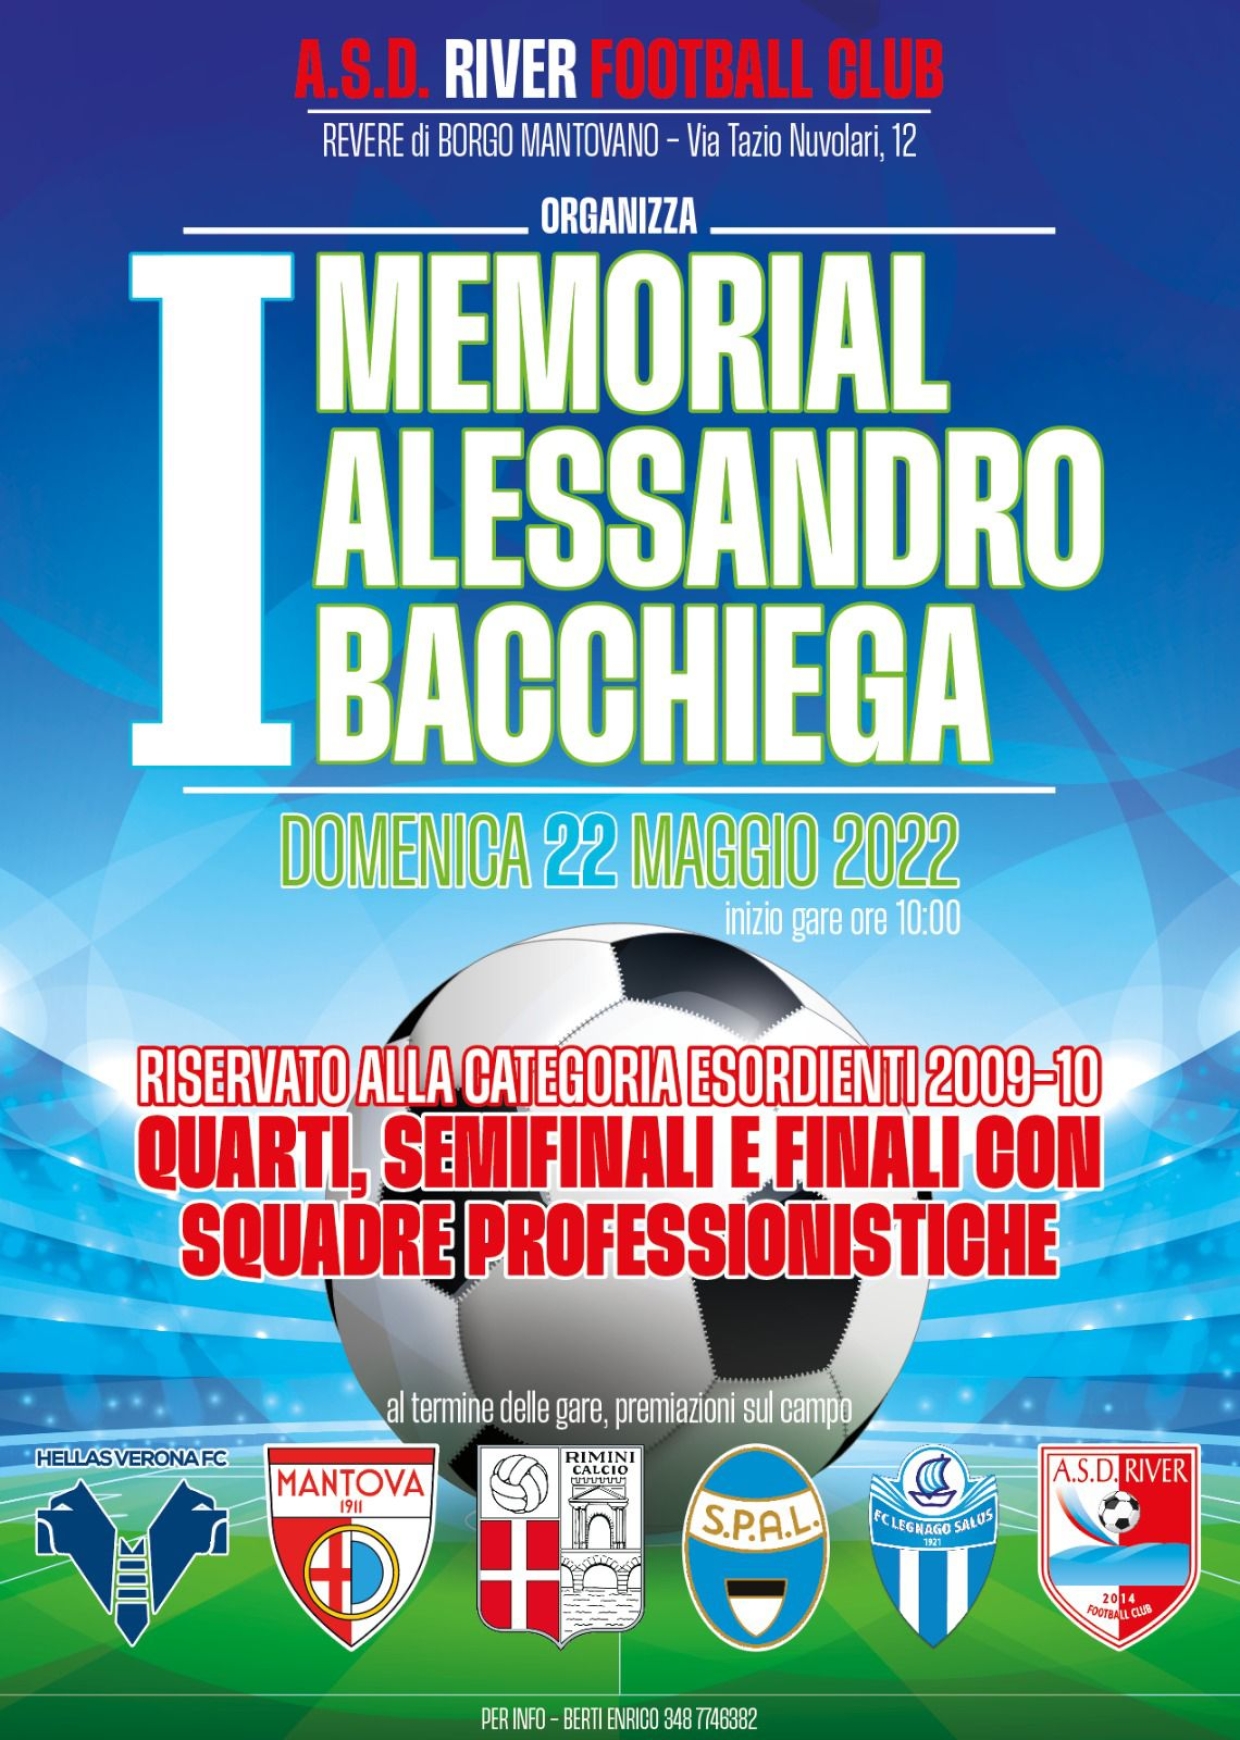 Memorial Alessandro Bacchiega, Revere 22 maggio 2022